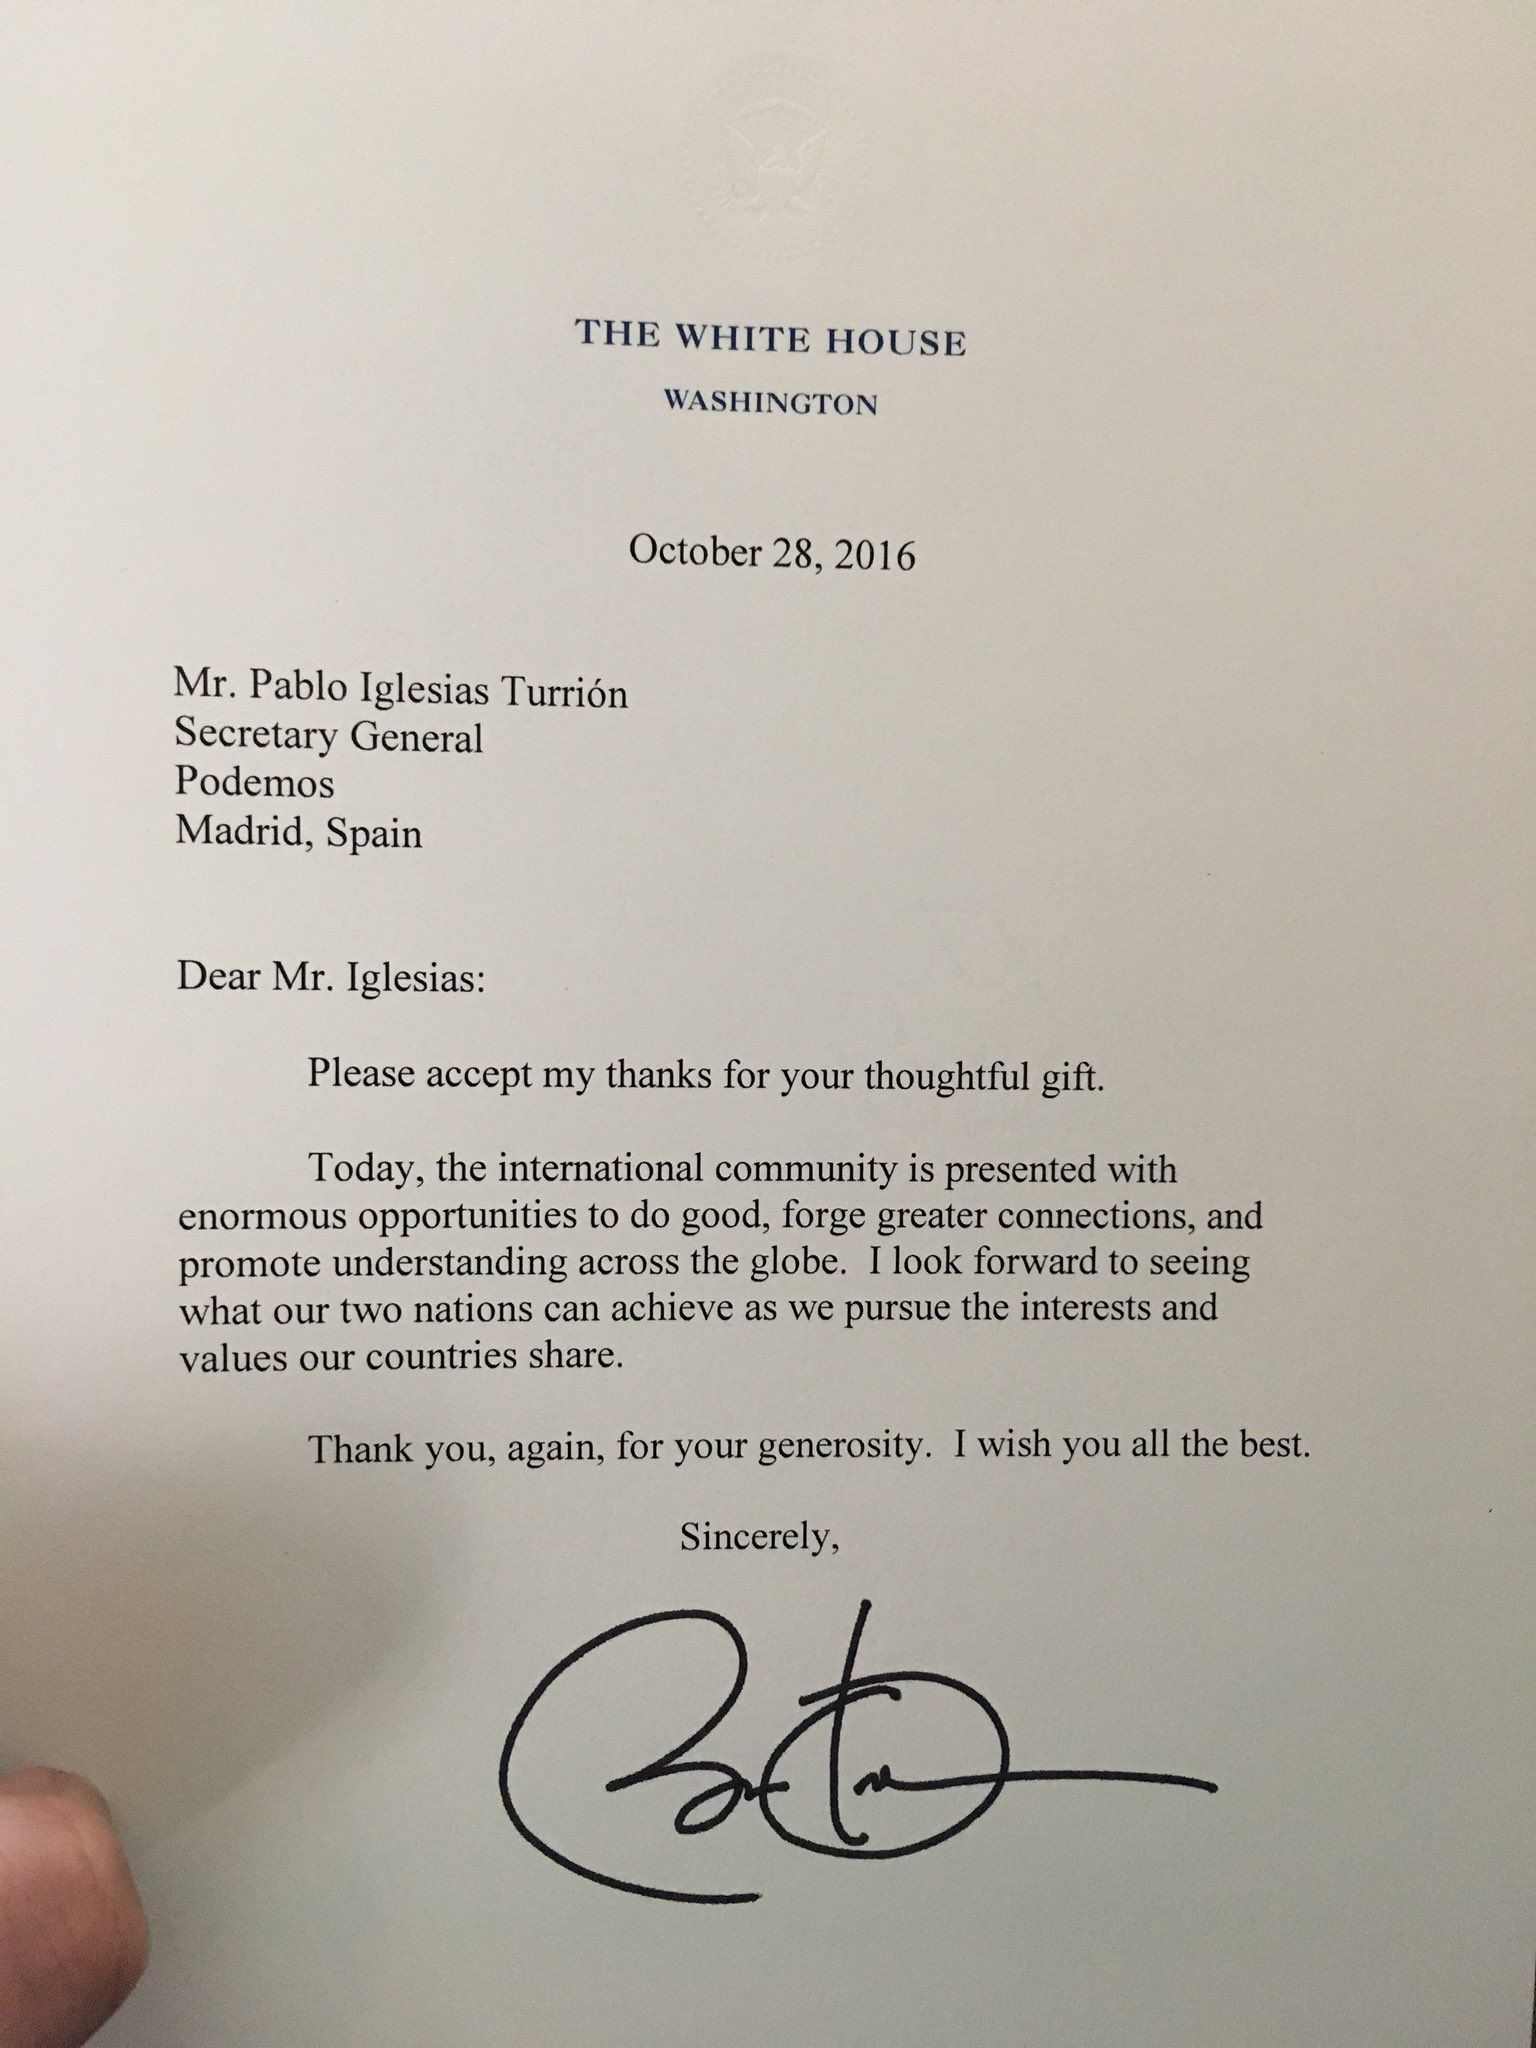 Obama agraeix a Pablo Iglesias el llibre que li va regalar